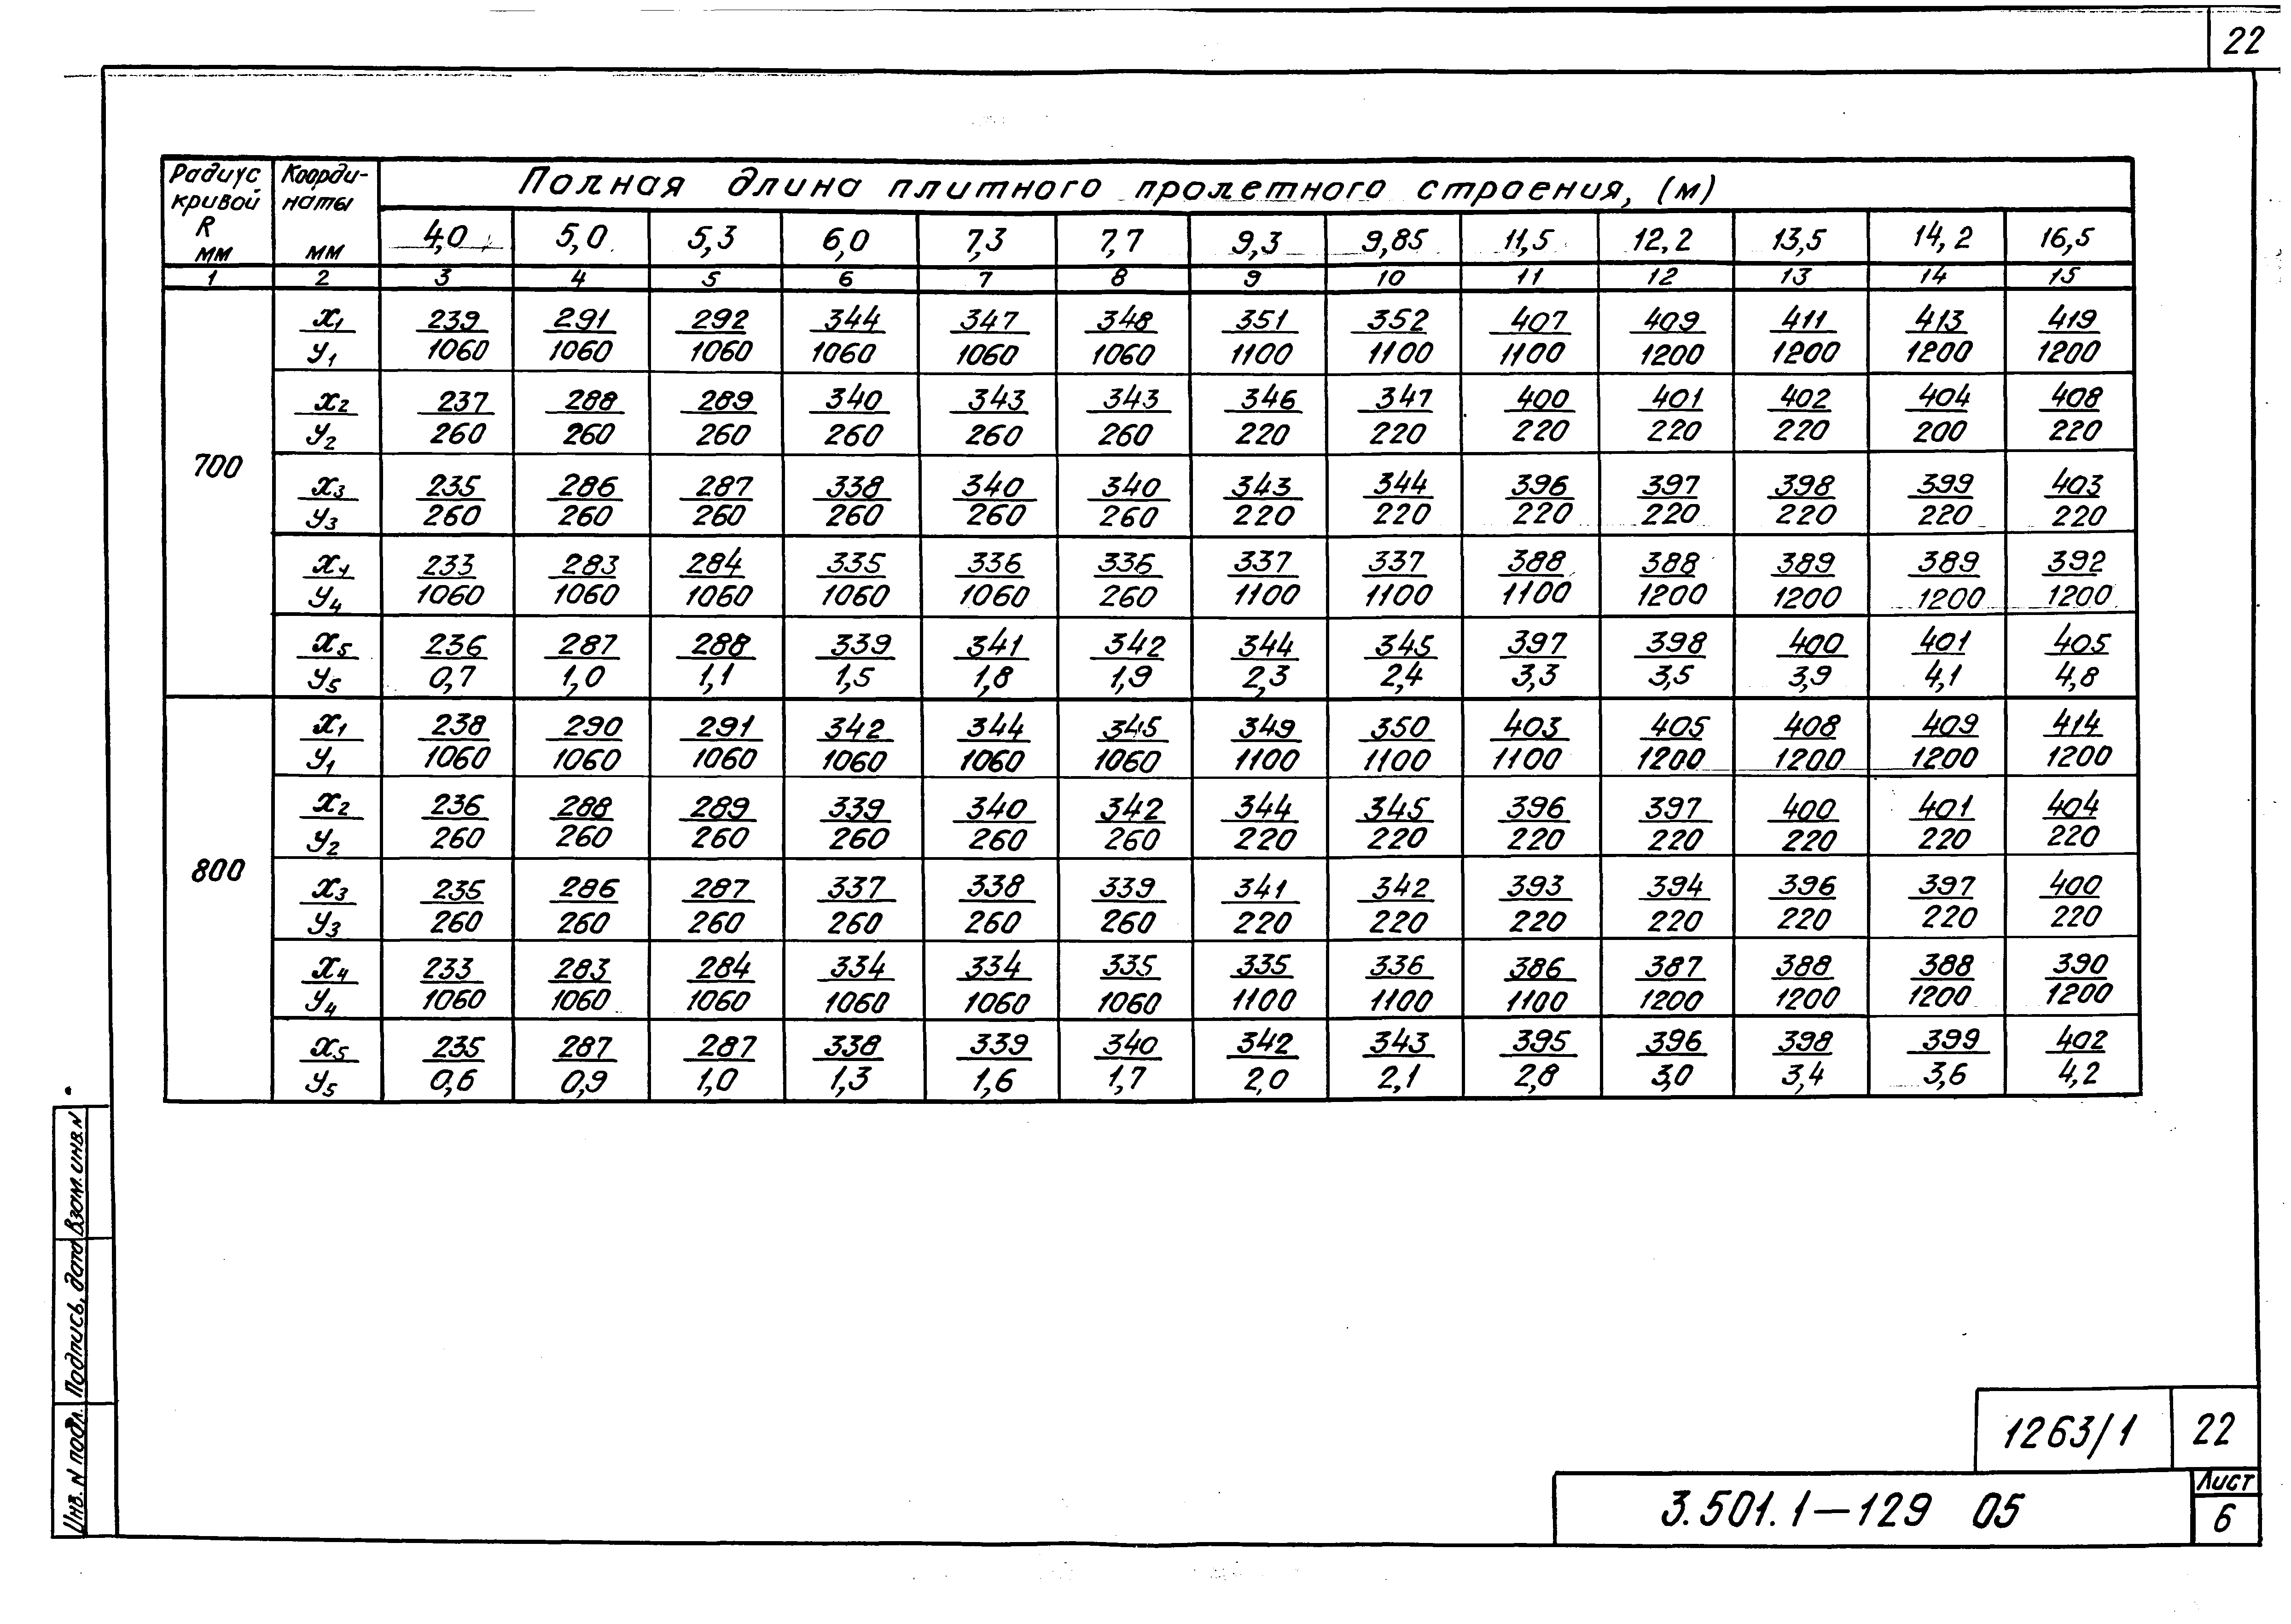 Серия 3.501.1-129